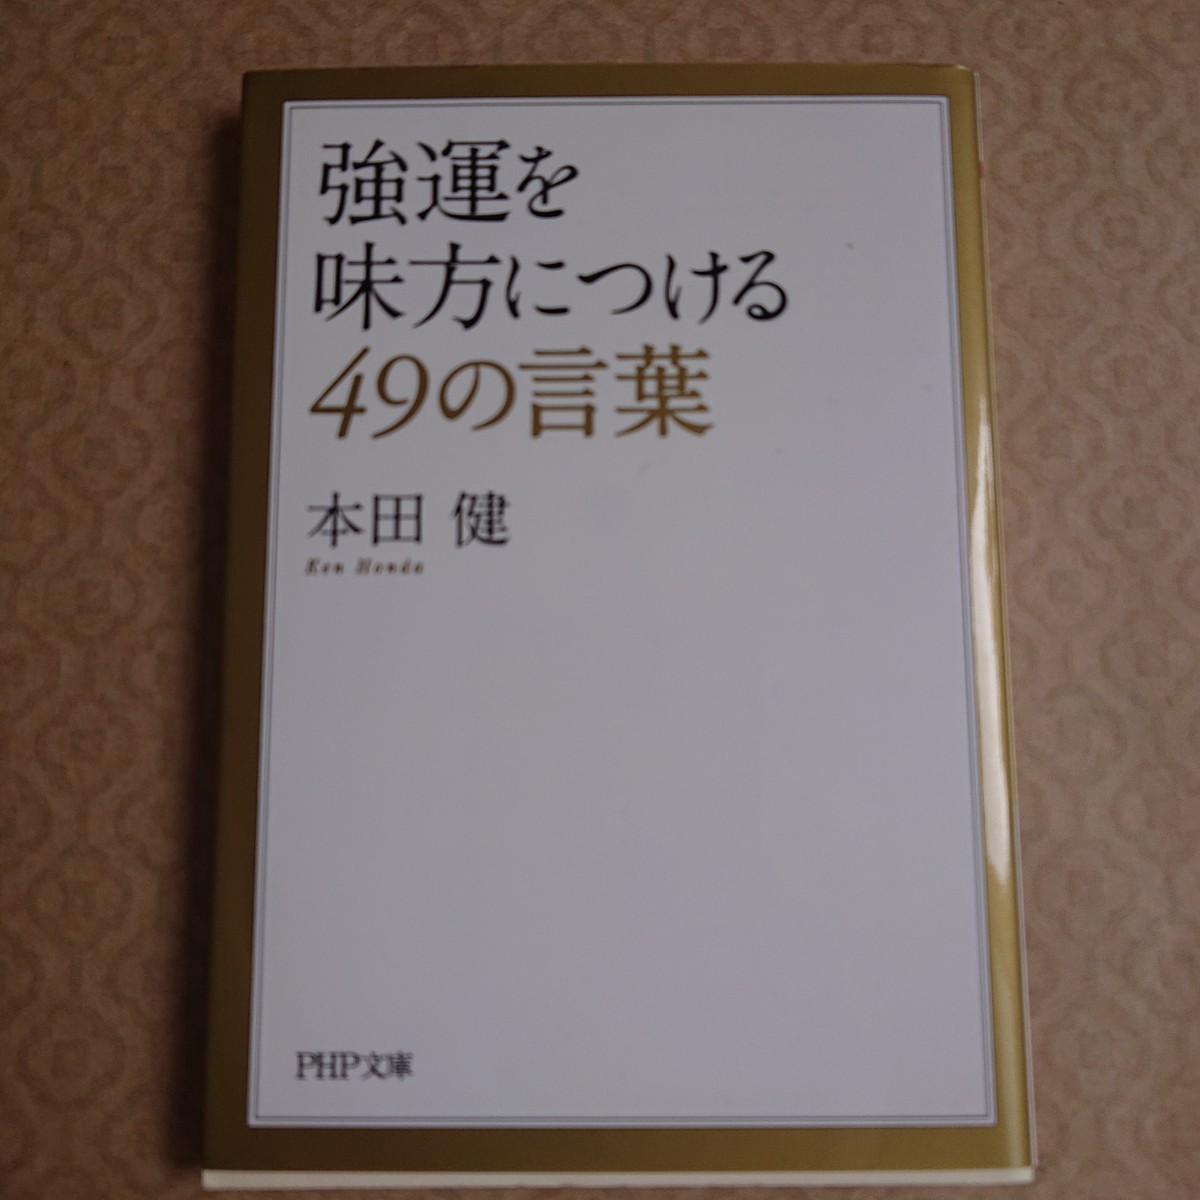 人気作家本田健さんの書籍を5冊まとめて